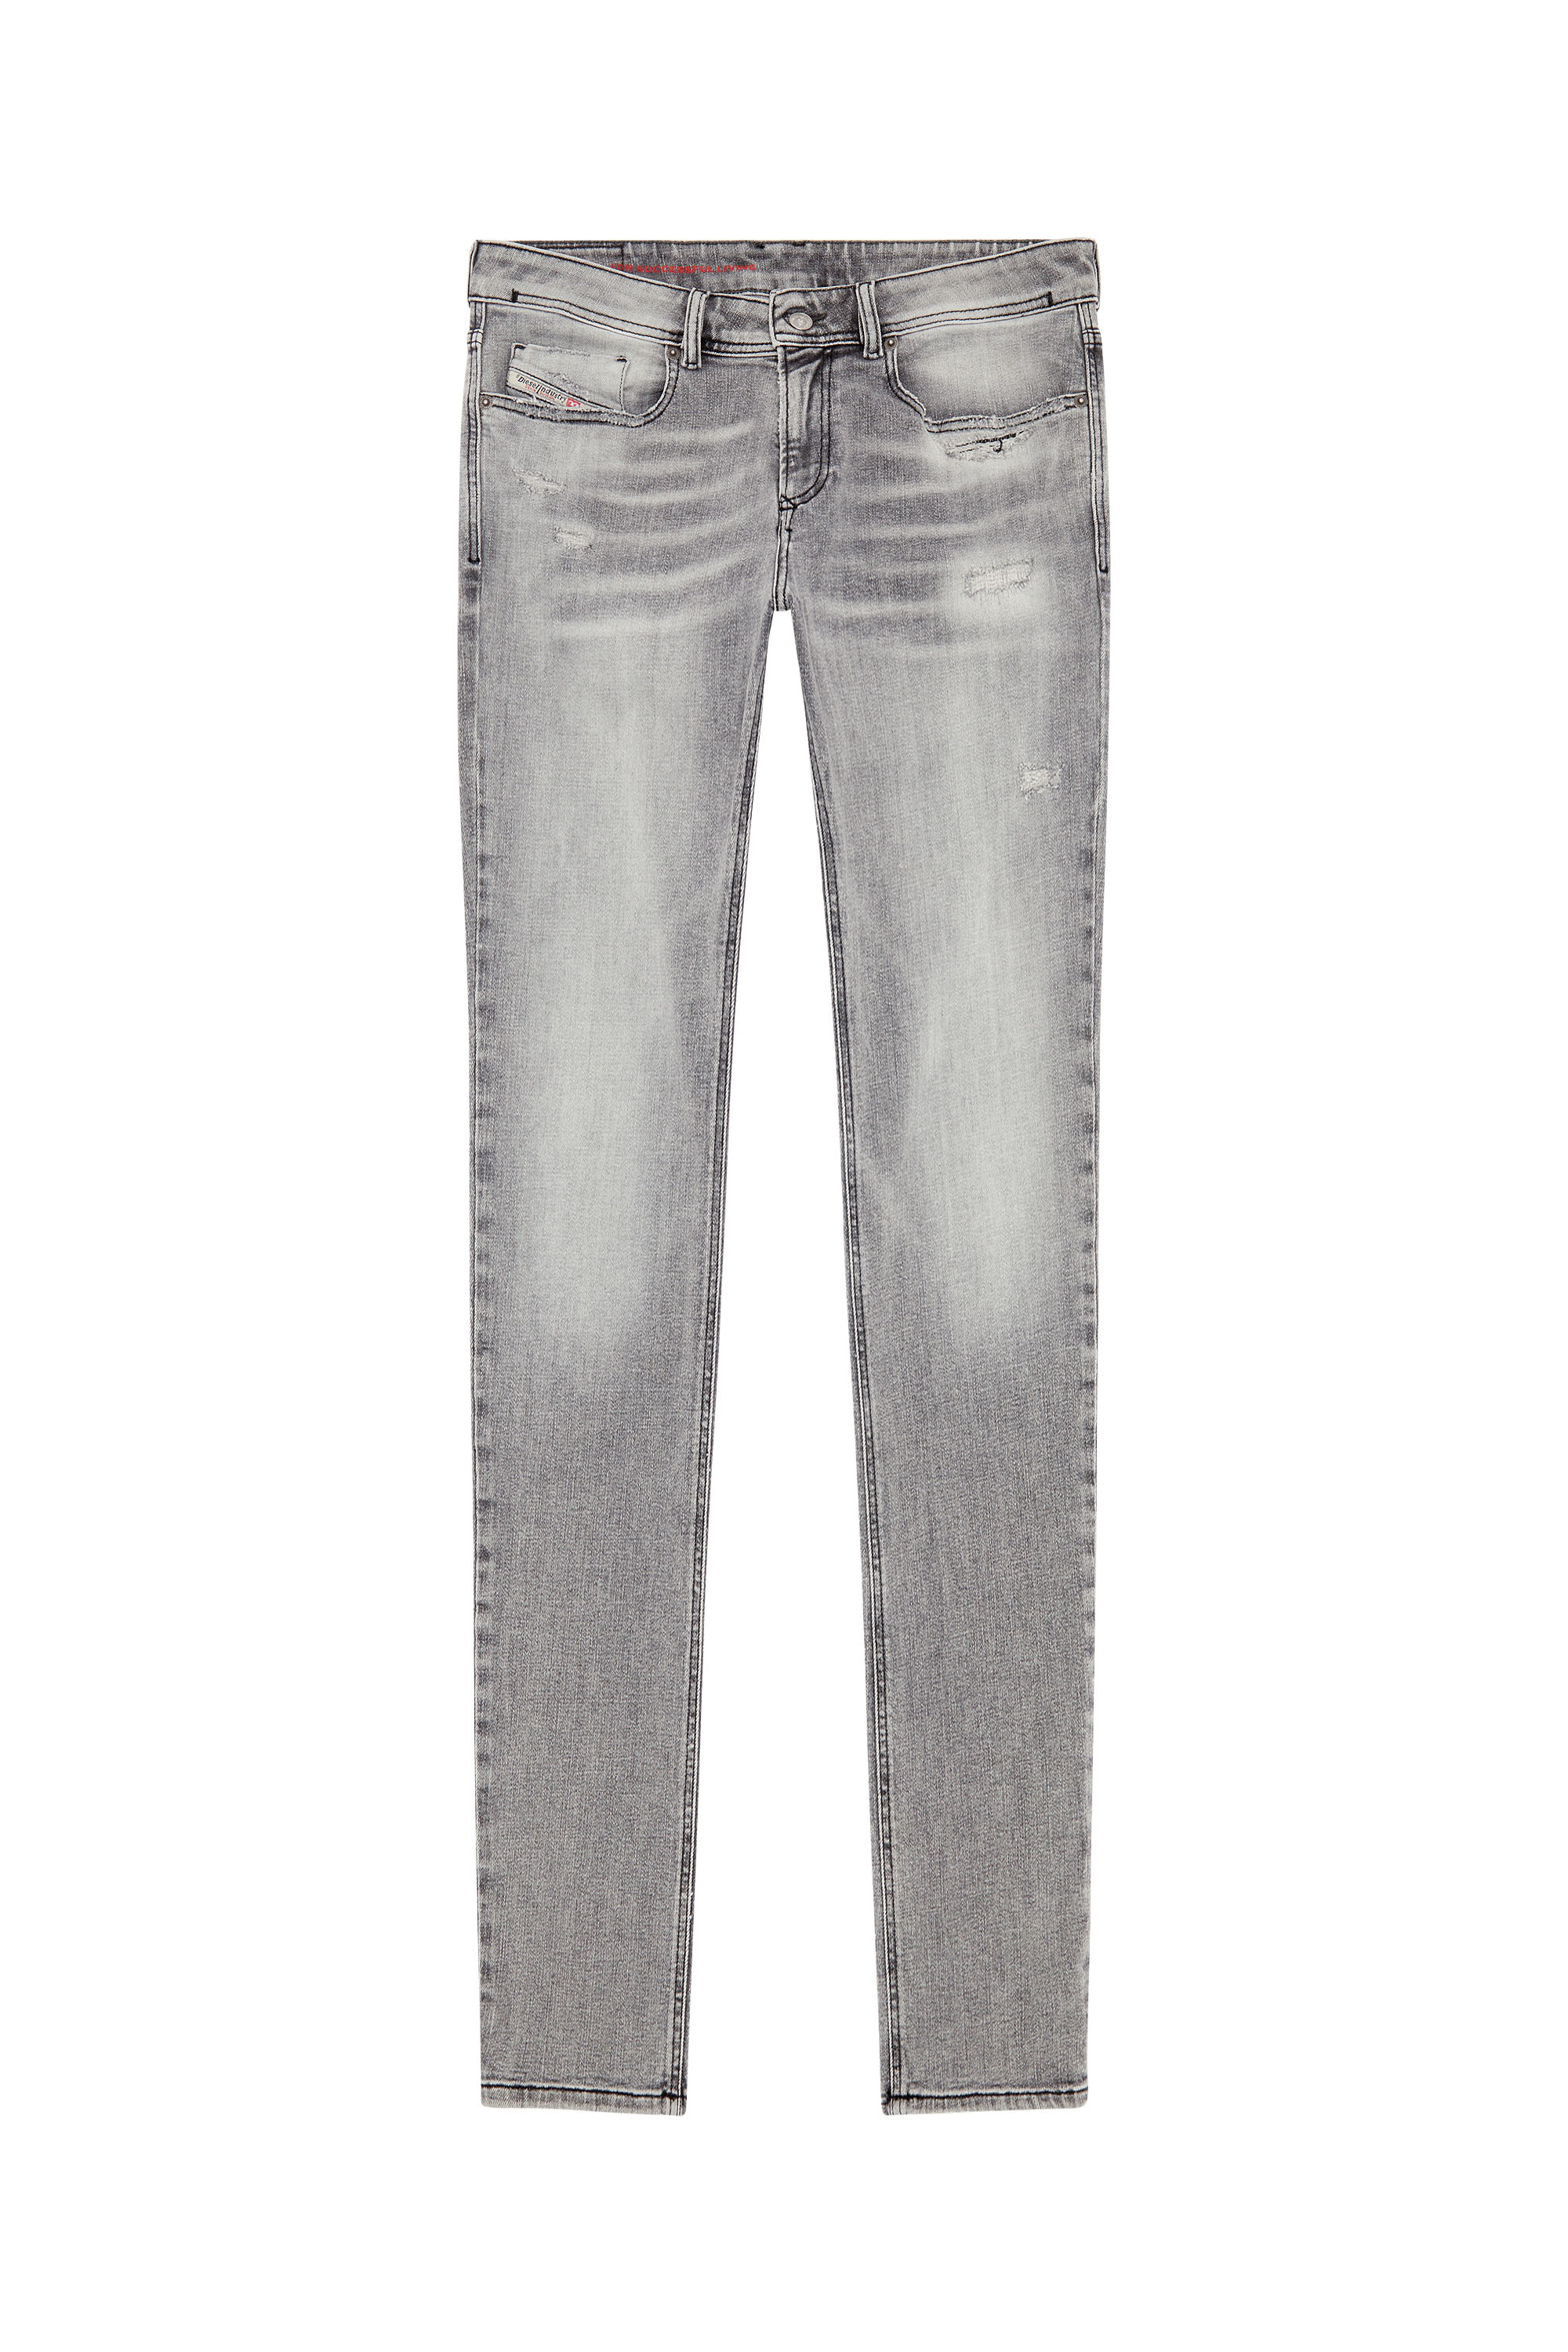 Diesel - Skinny Jeans 1979 Sleenker E9B97, Black/Dark grey - Image 3